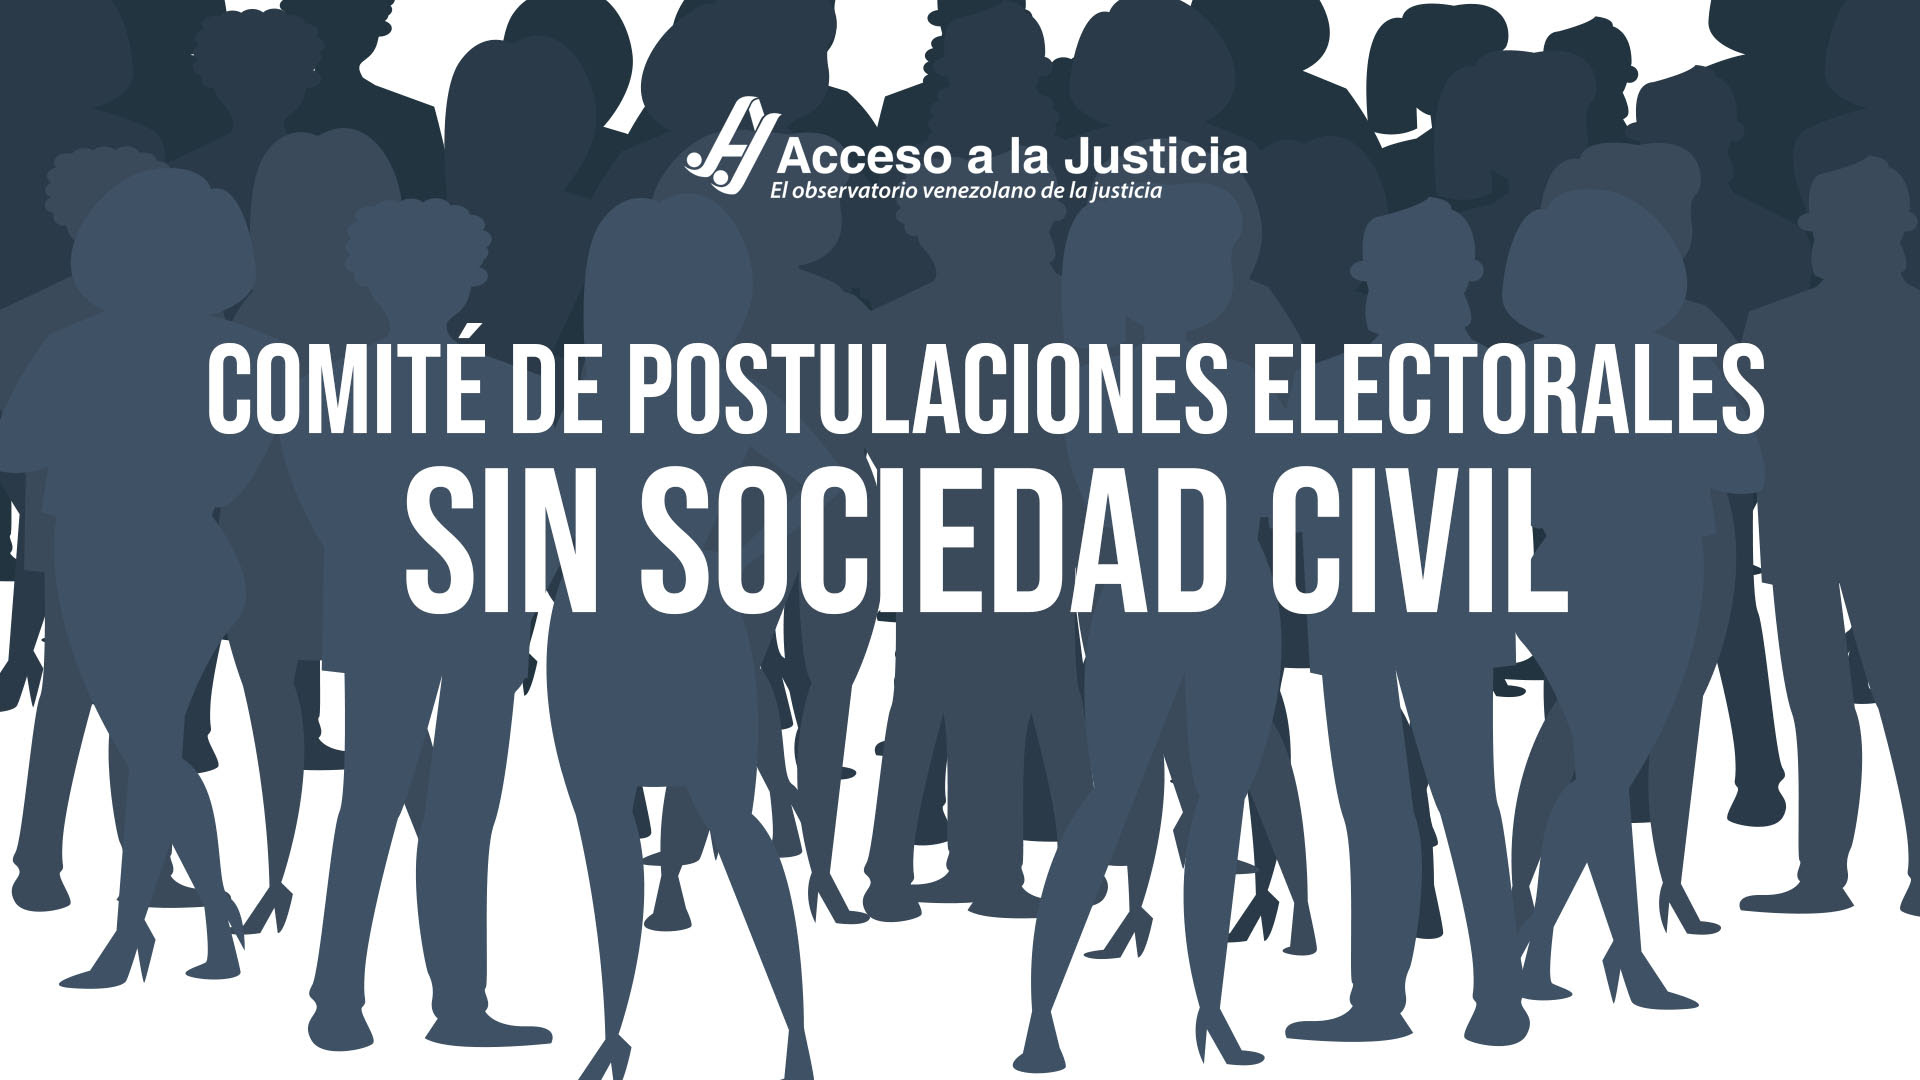 Acceso a la Justicia: Comité de Postulaciones Electorales sin sociedad civil